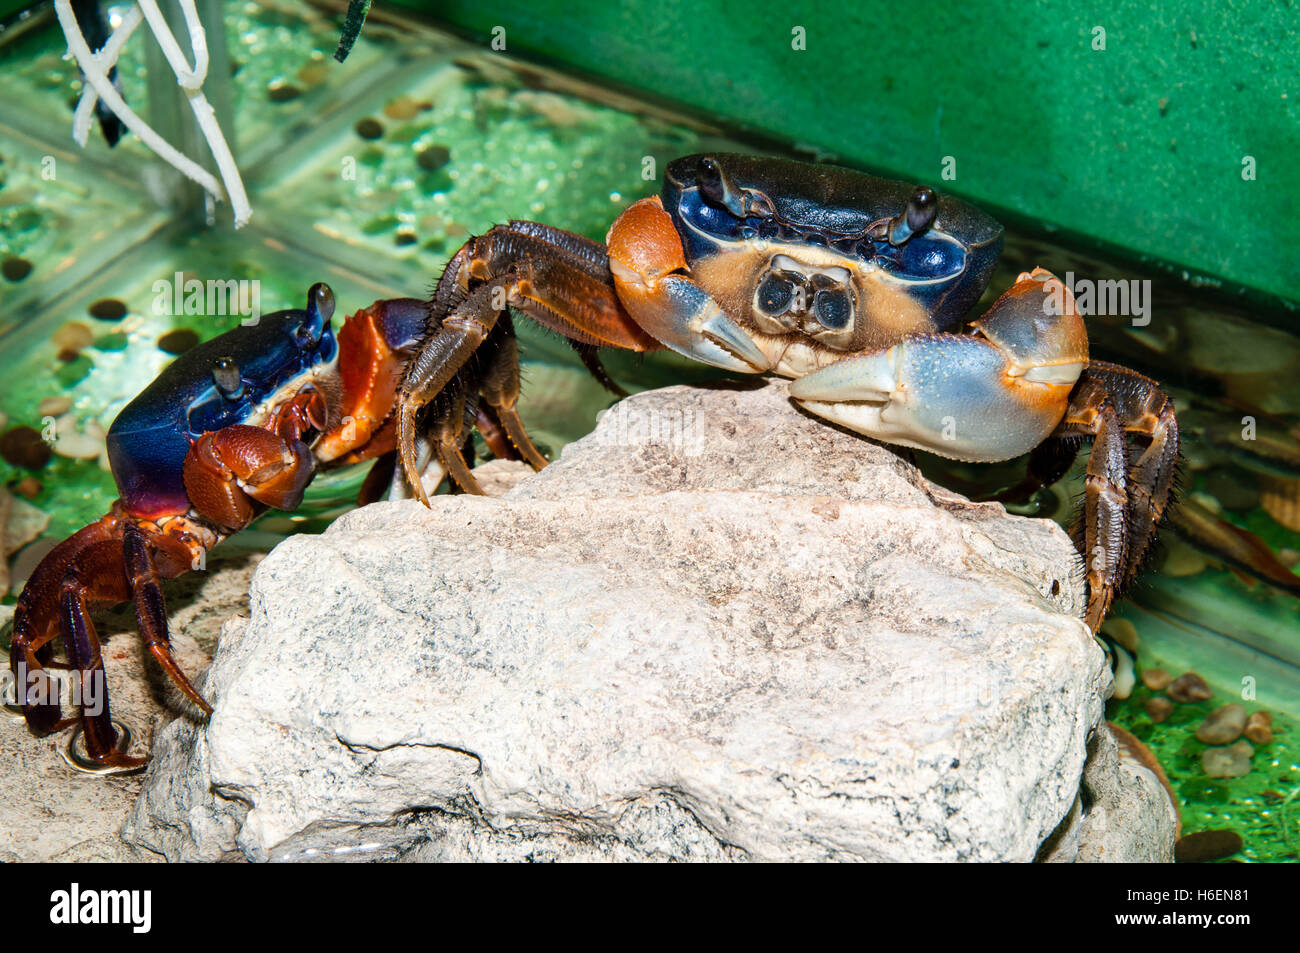 Rainbow crab or Cardisoma armatum in the Aquarium Stock Photo - Alamy